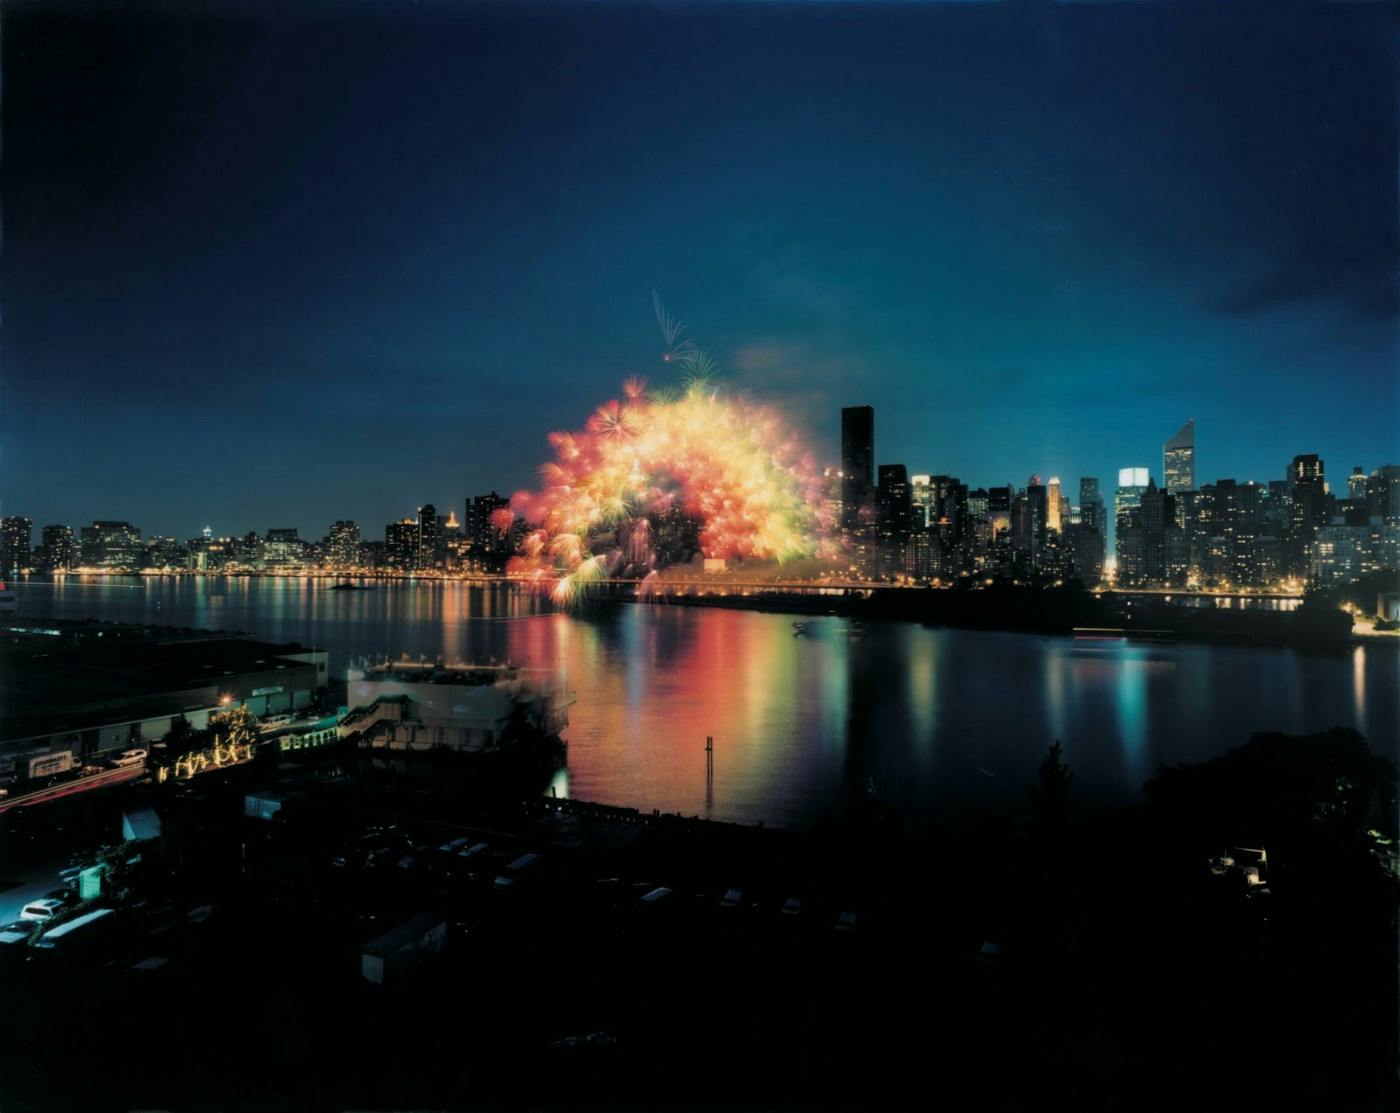 蔡国强，《移动彩虹》，2002。于纽约的东河上实施、从曼哈顿到皇后区，纽约， 6月29日，晚上9:30分, 历时15秒钟。1000枚3英吋大小、安装了电脑芯片的彩色牡丹花型焰火，爆破半径约200米